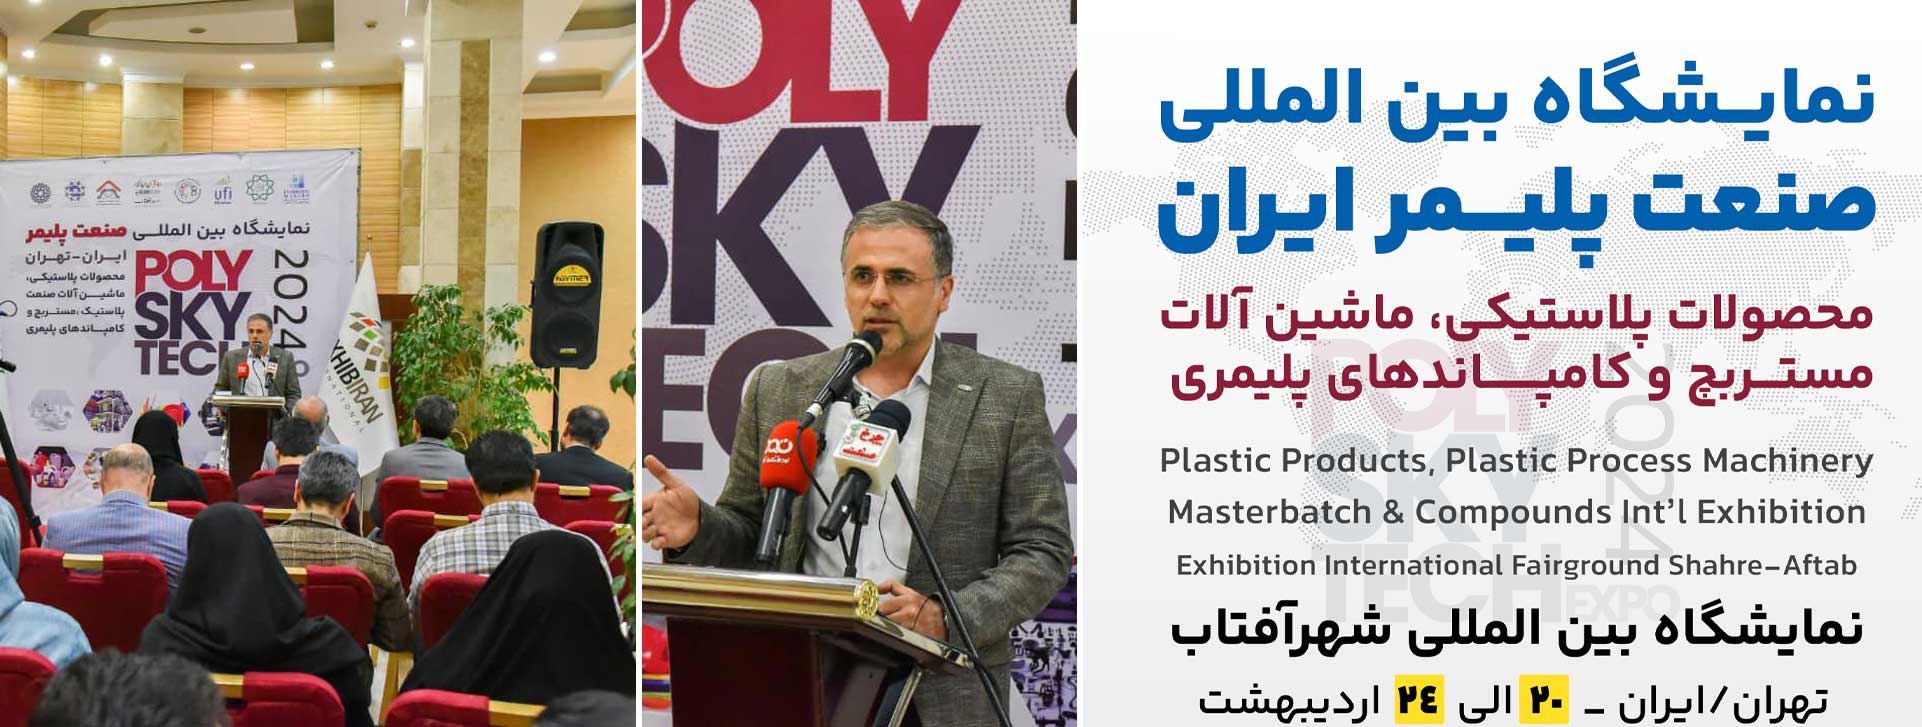 مروری بر نشست خبری حول موضوع برگزاری نمایشگاه صنعت پلاستیک ایران